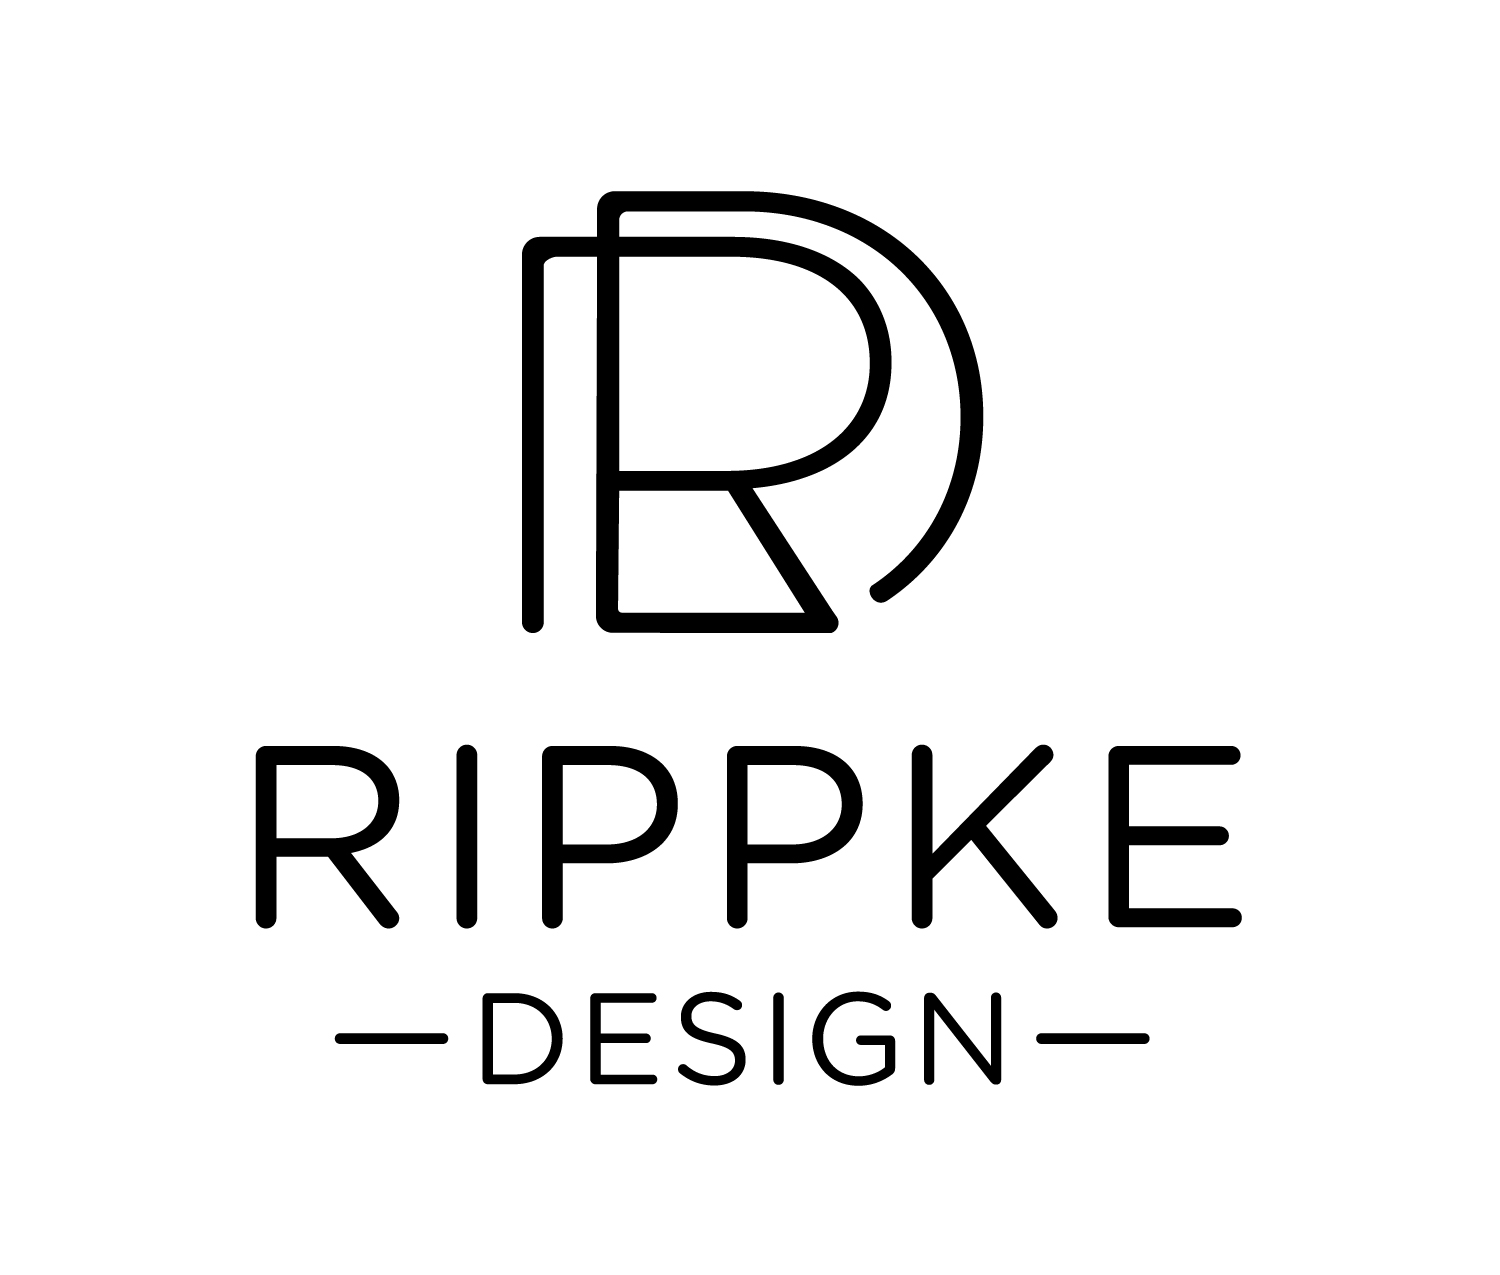 Rippke Design on LogoLounge